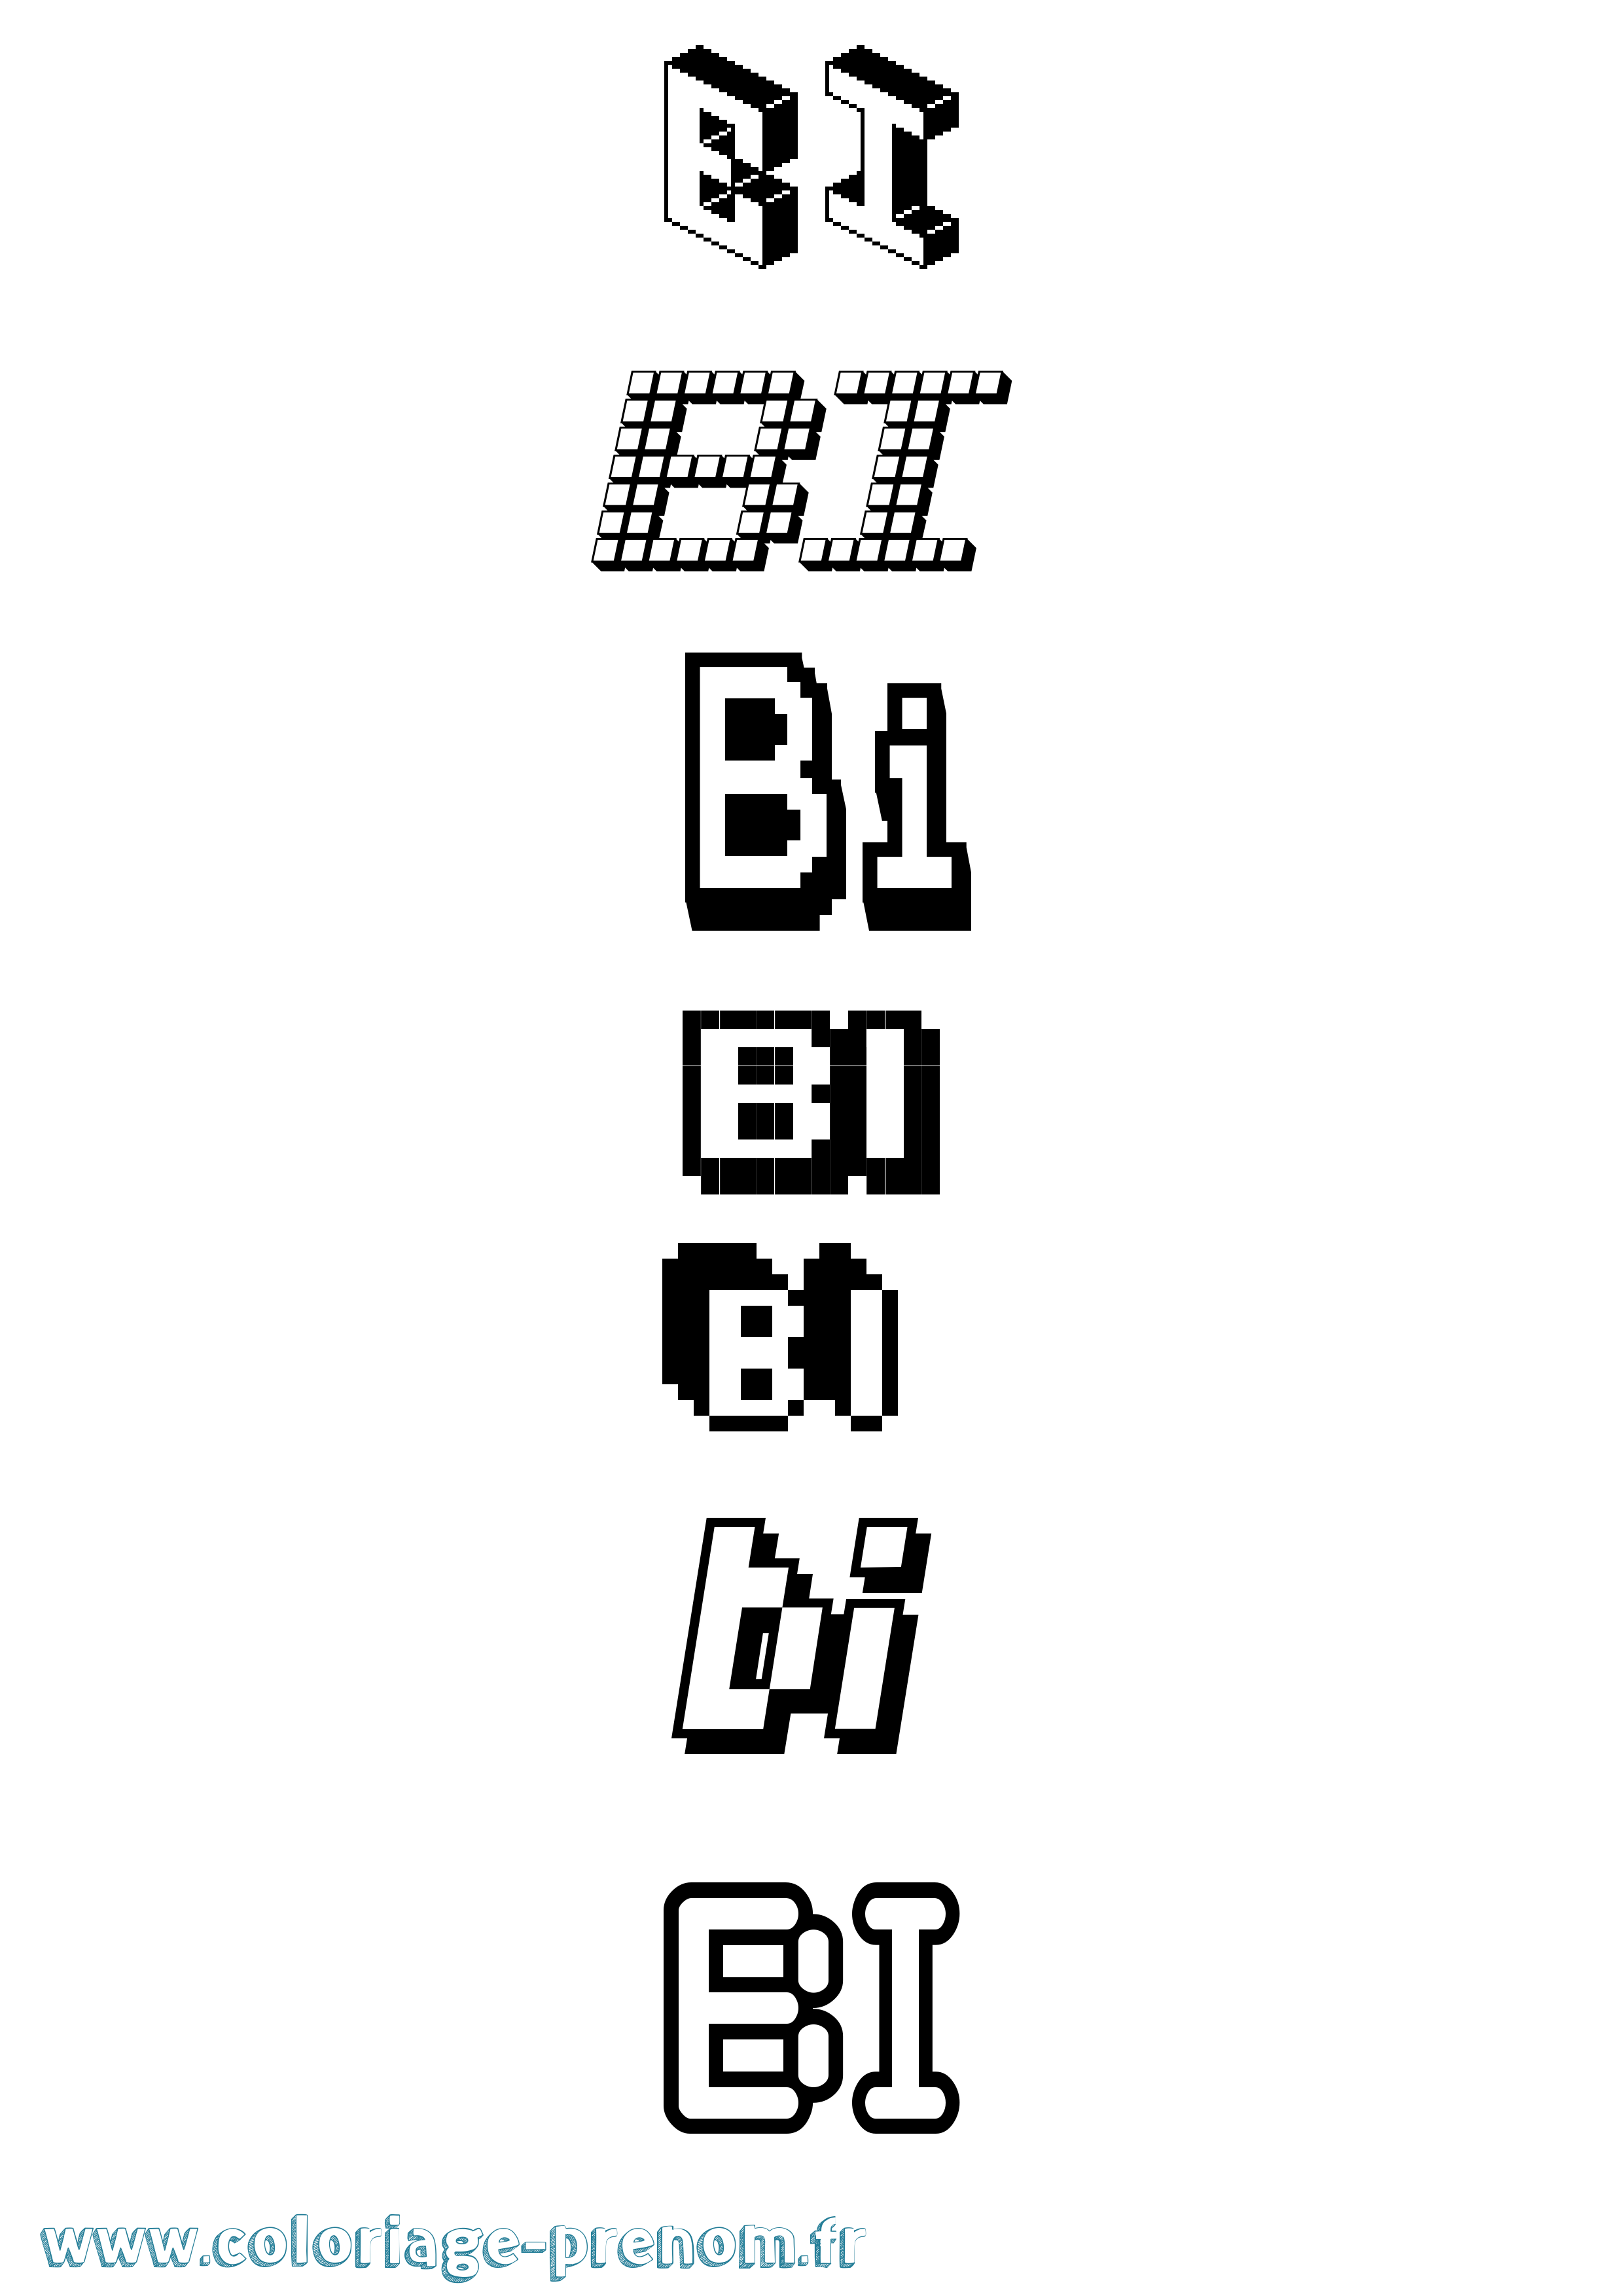 Coloriage prénom Bi Pixel